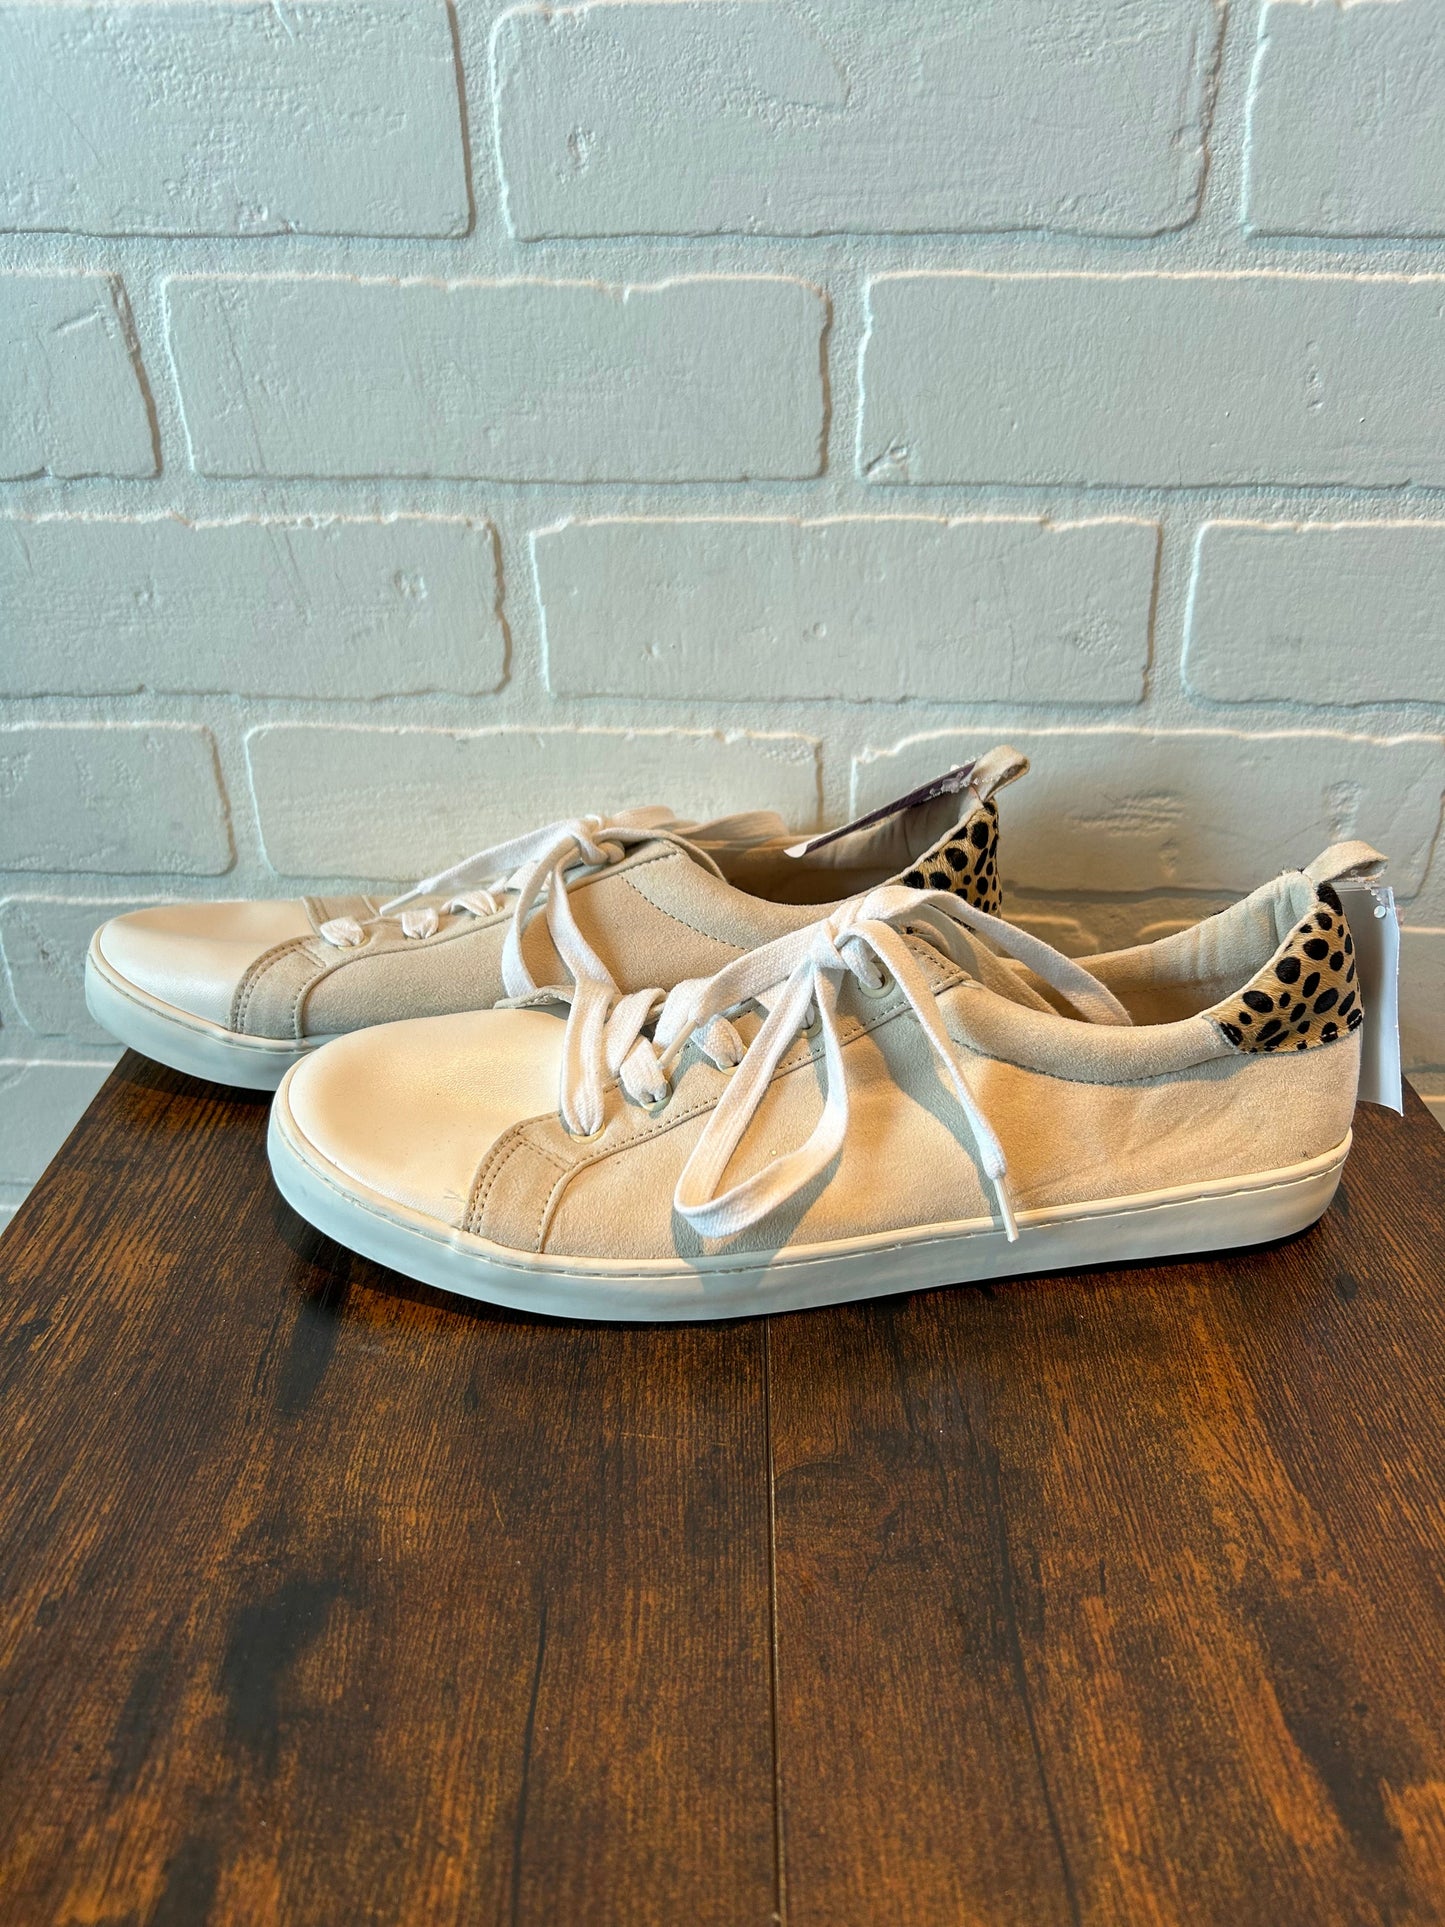 Tan & White Shoes Sneakers Gap, Size 10